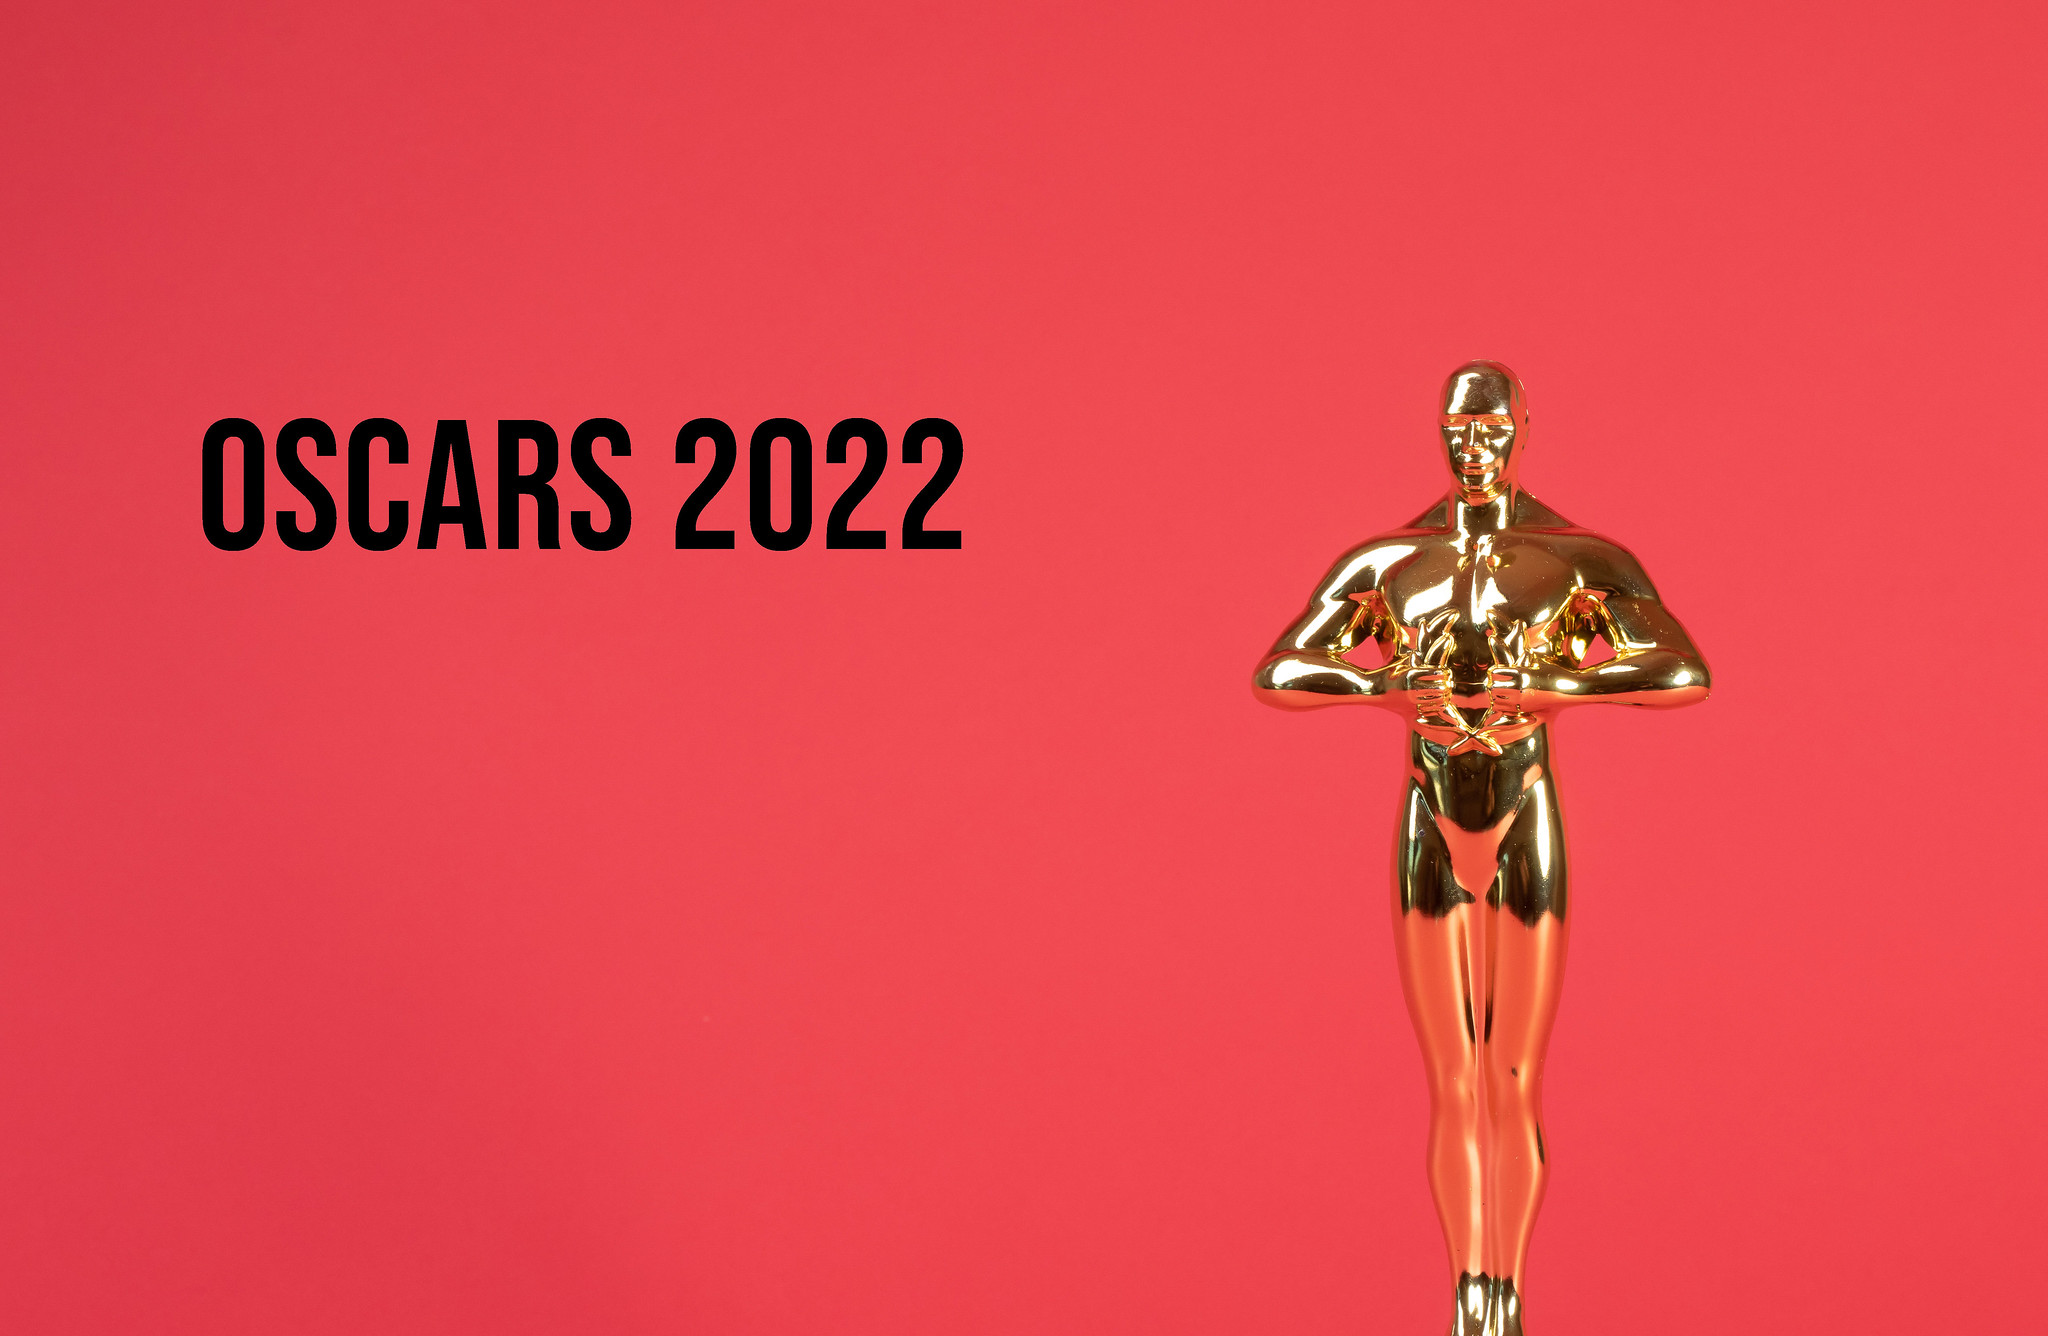 Oscars 2022 highlights